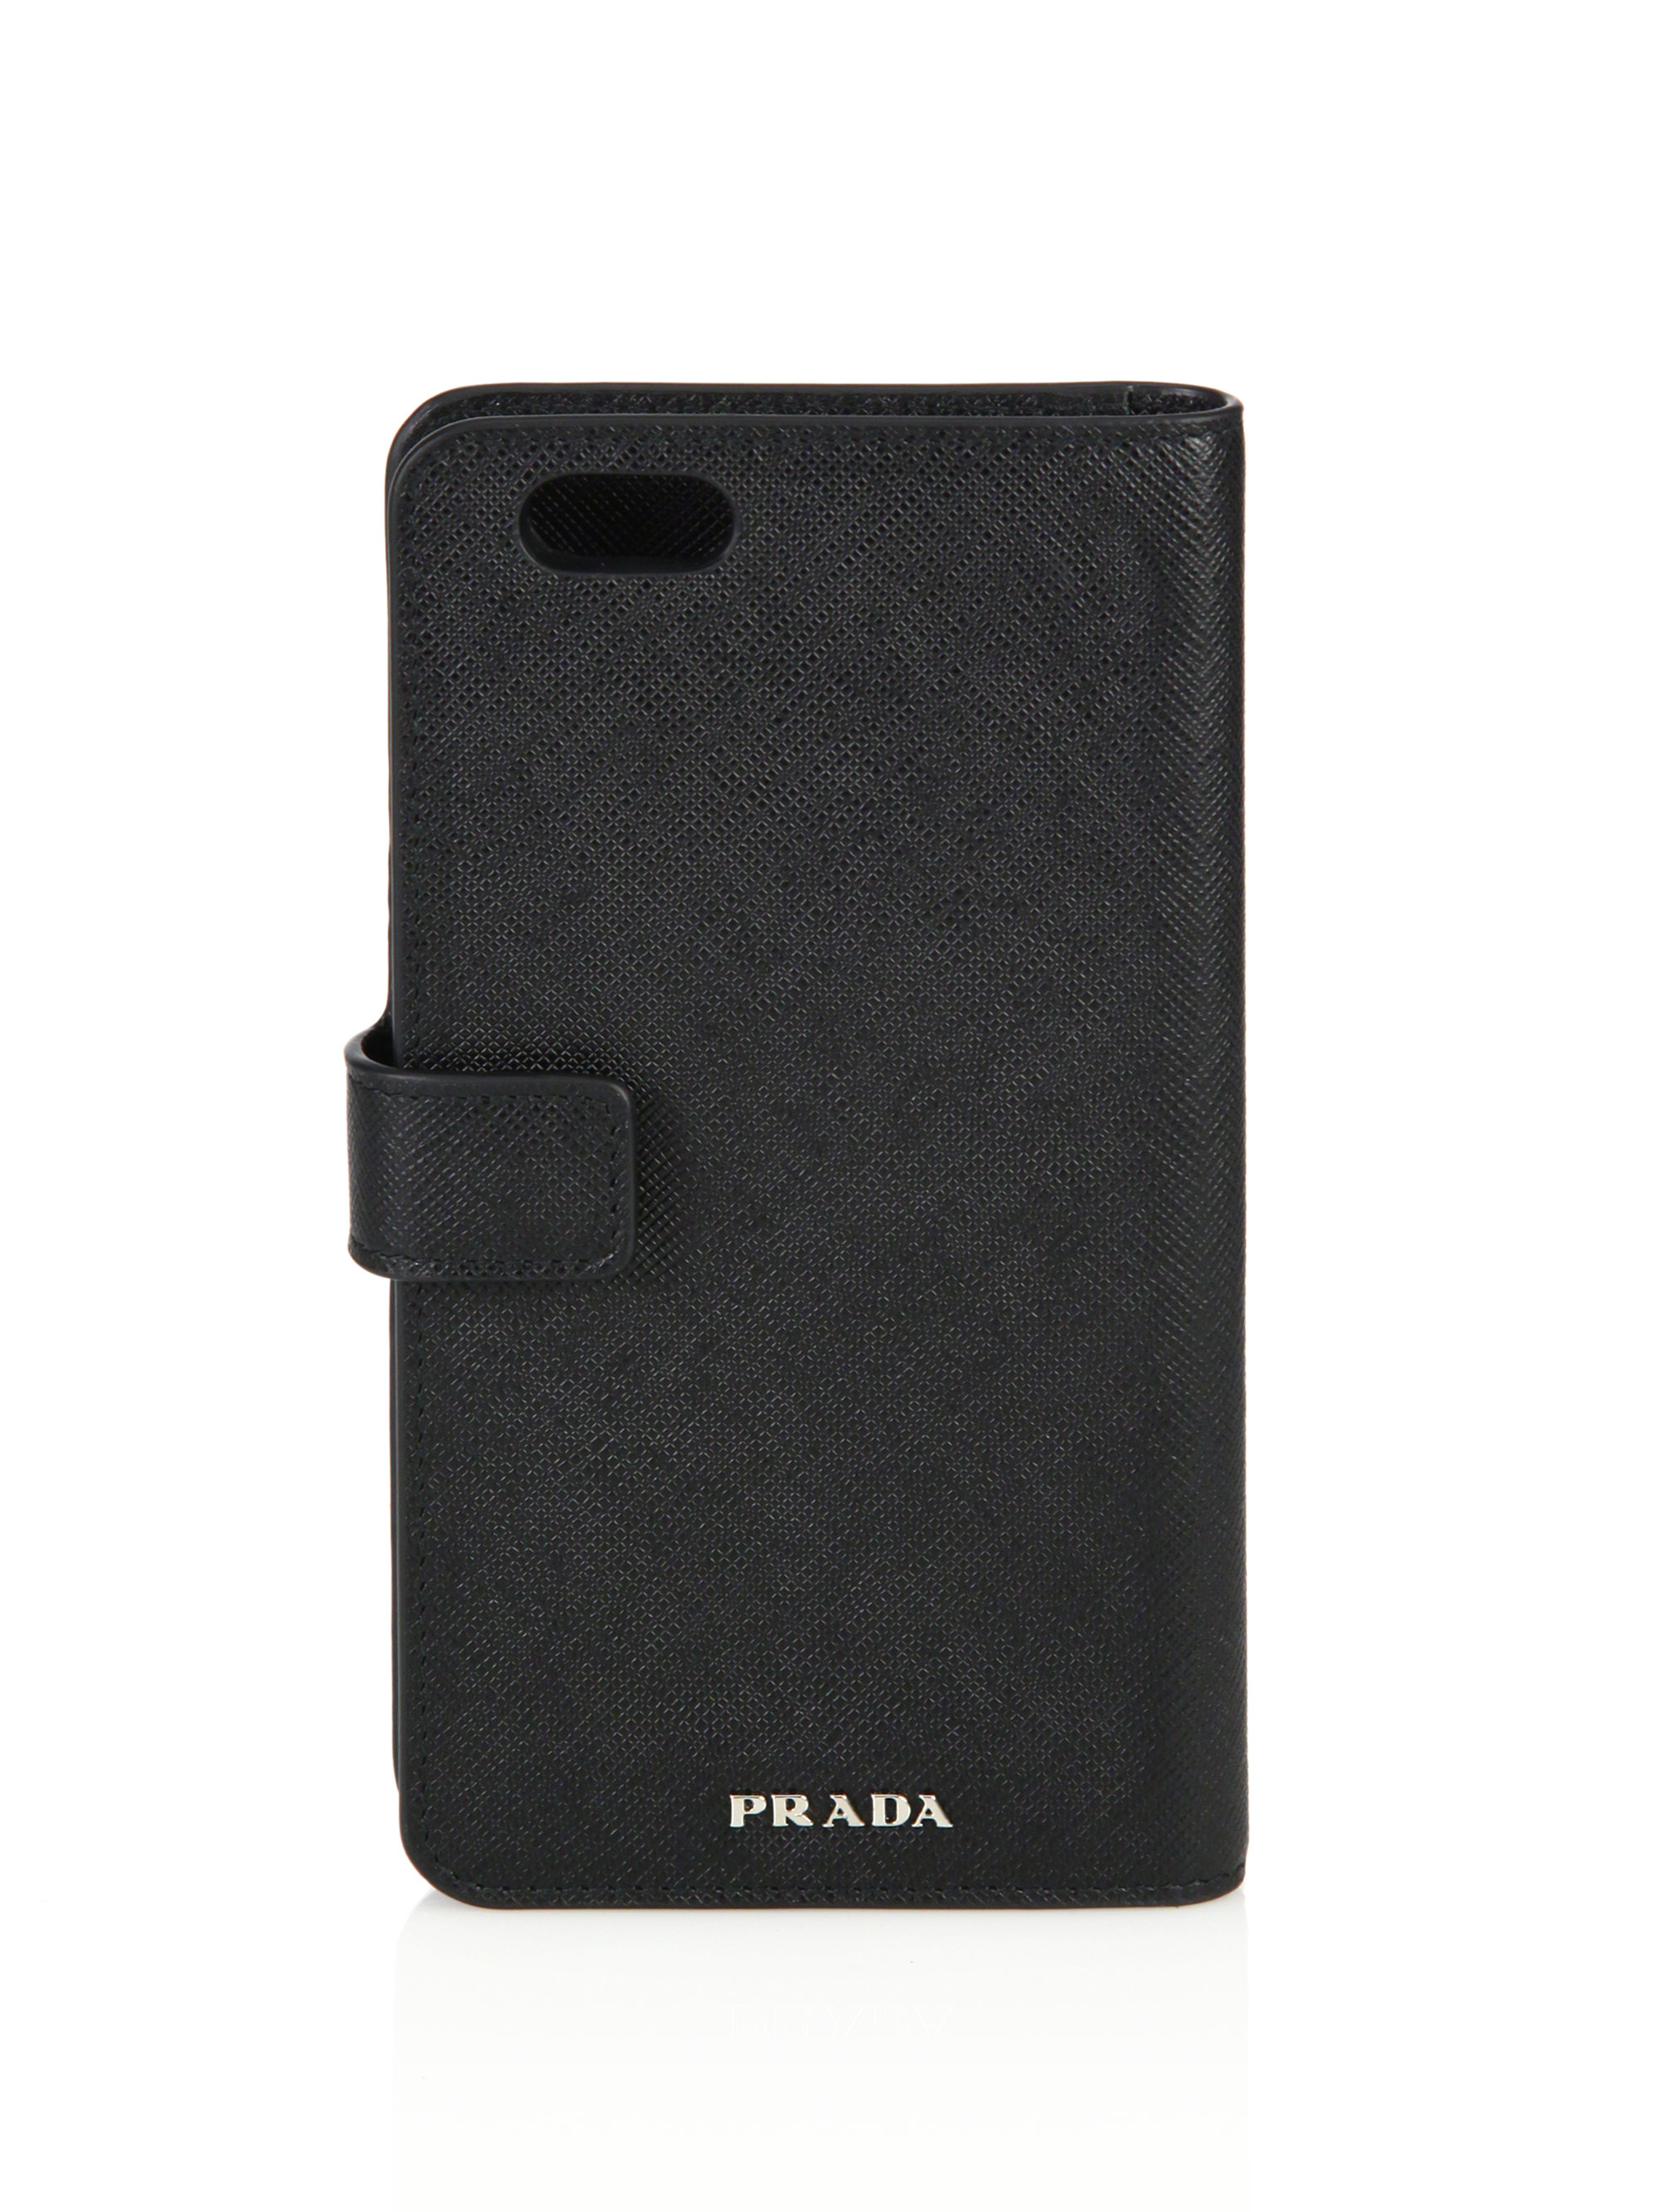 prada phone case iphone 8 plus